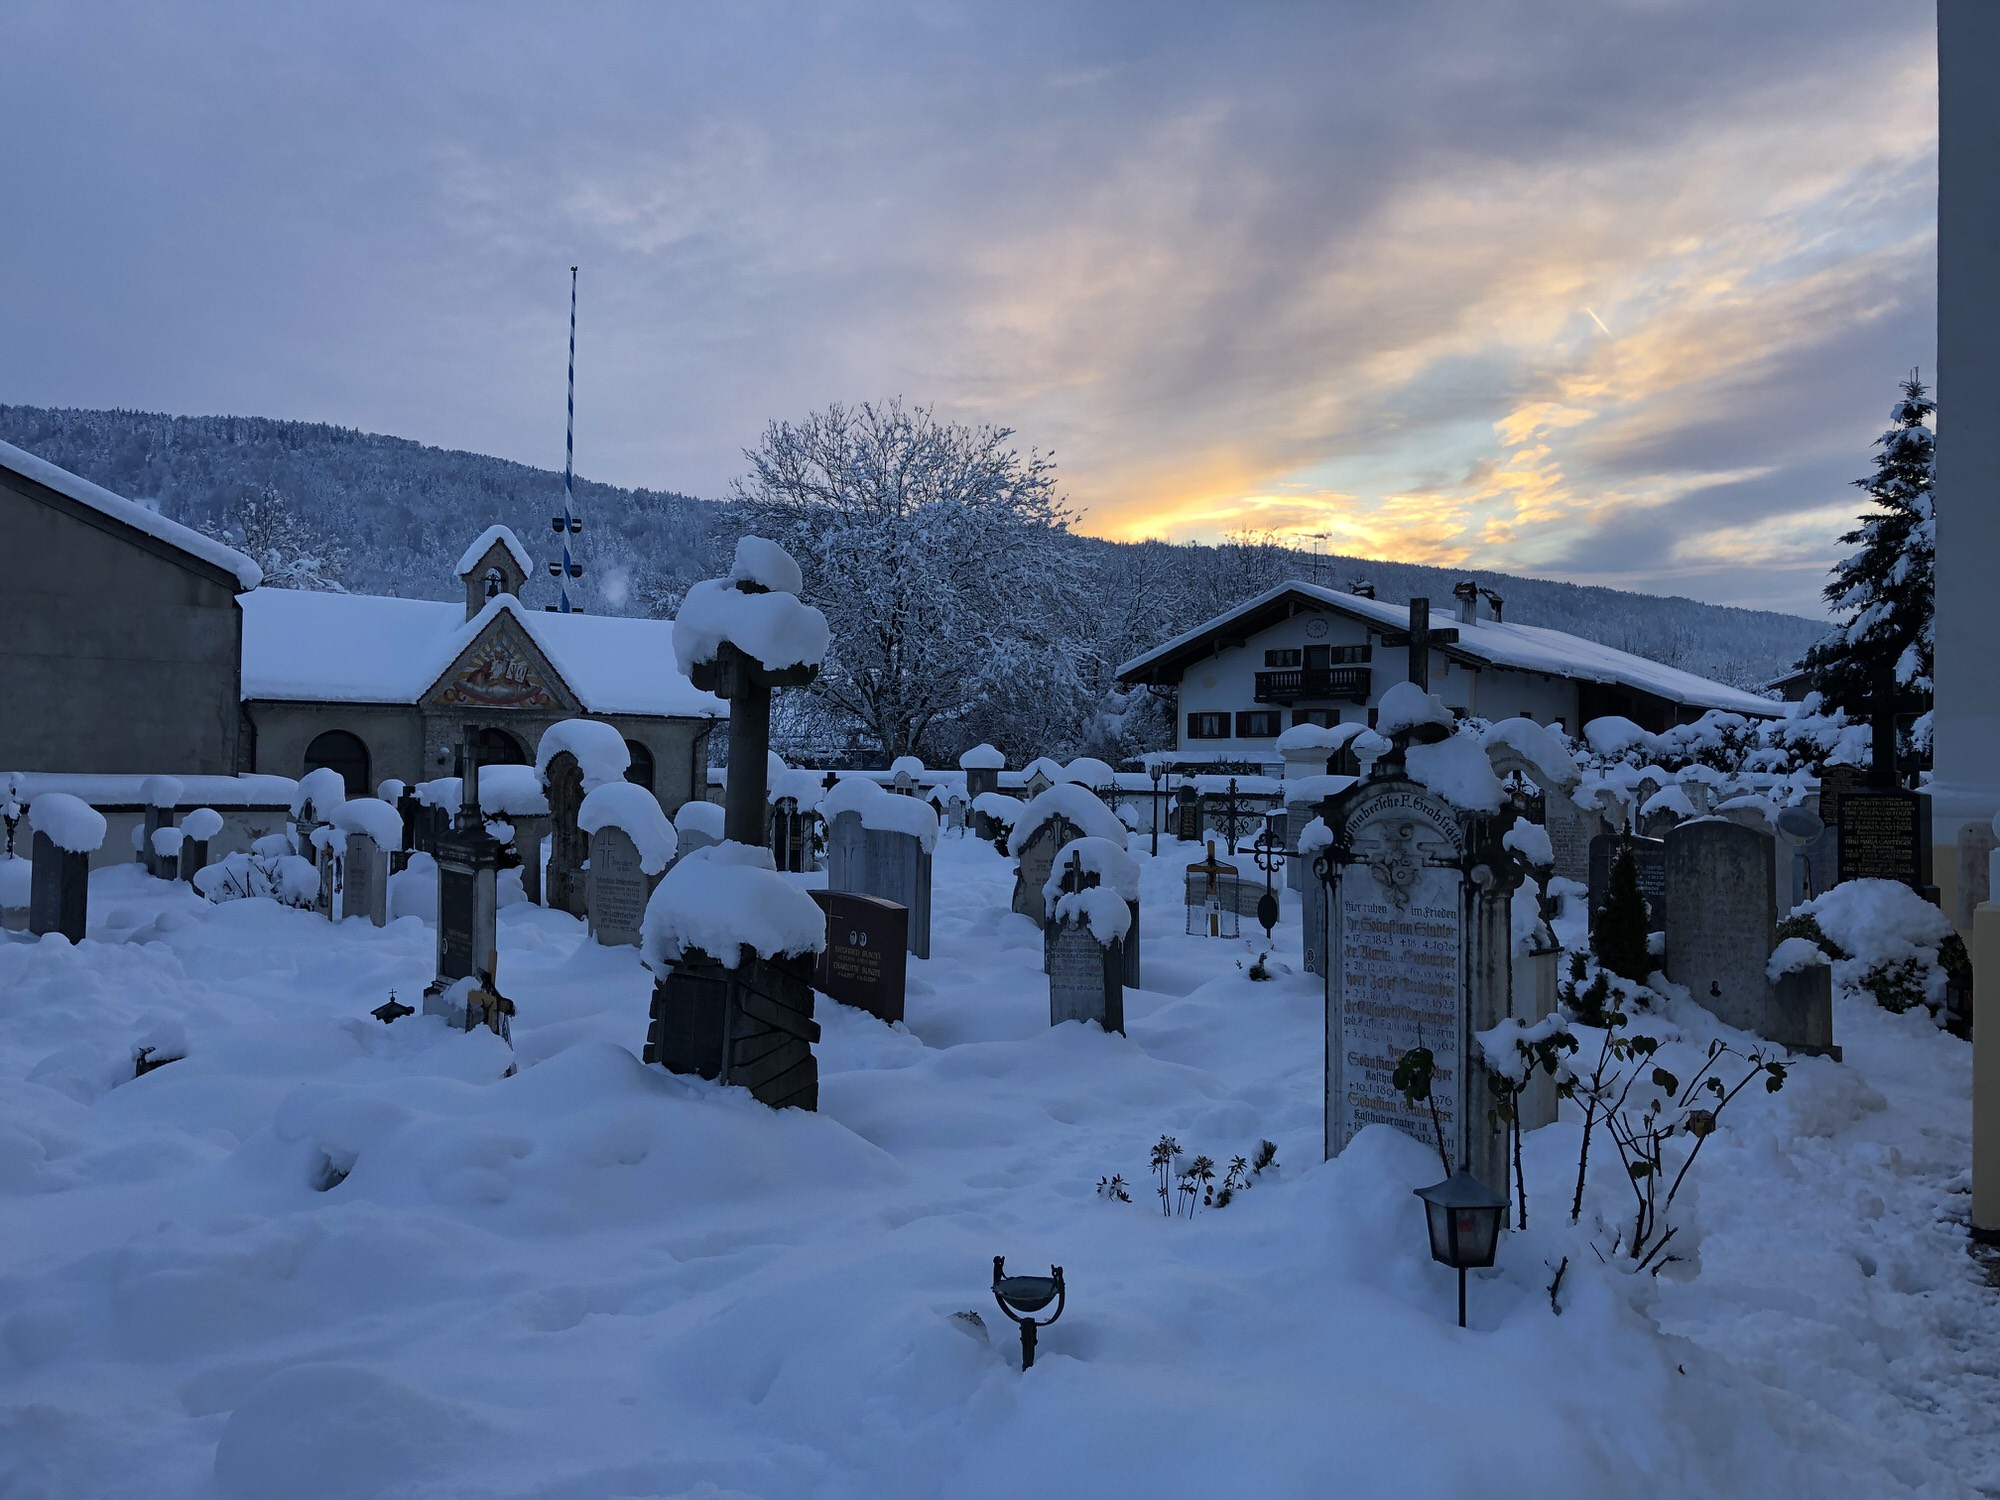 Winterliche Impressionen von der Pfarrkirche Au